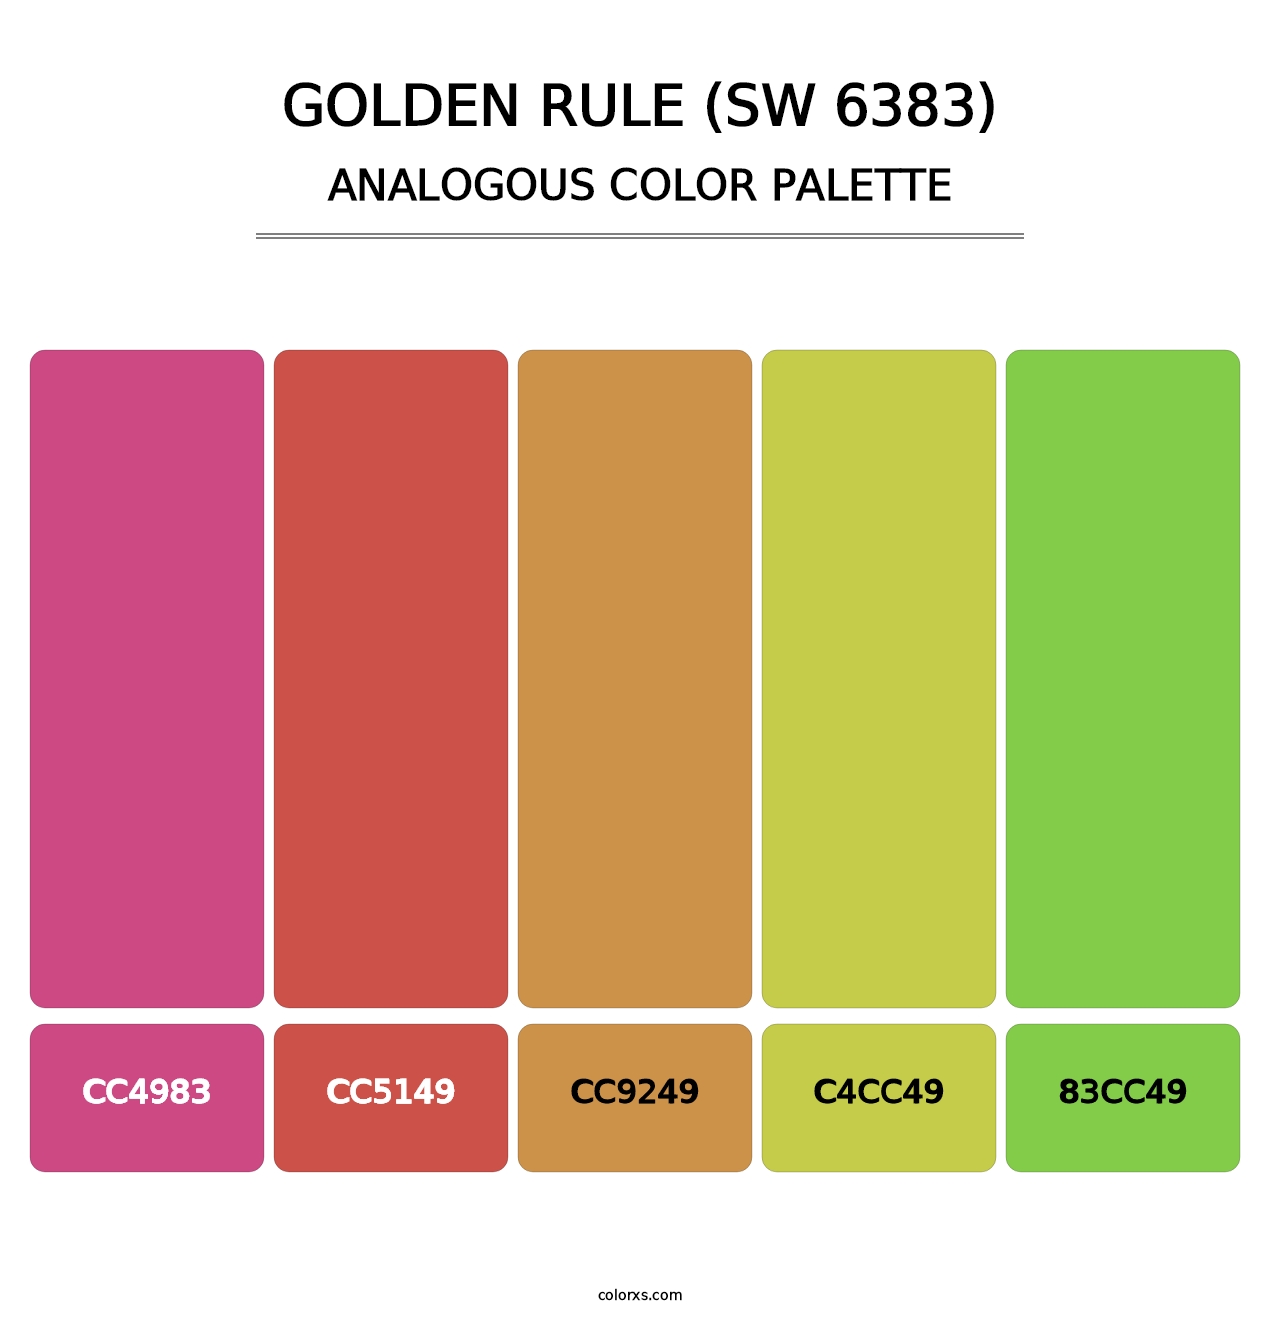 Golden Rule (SW 6383) - Analogous Color Palette